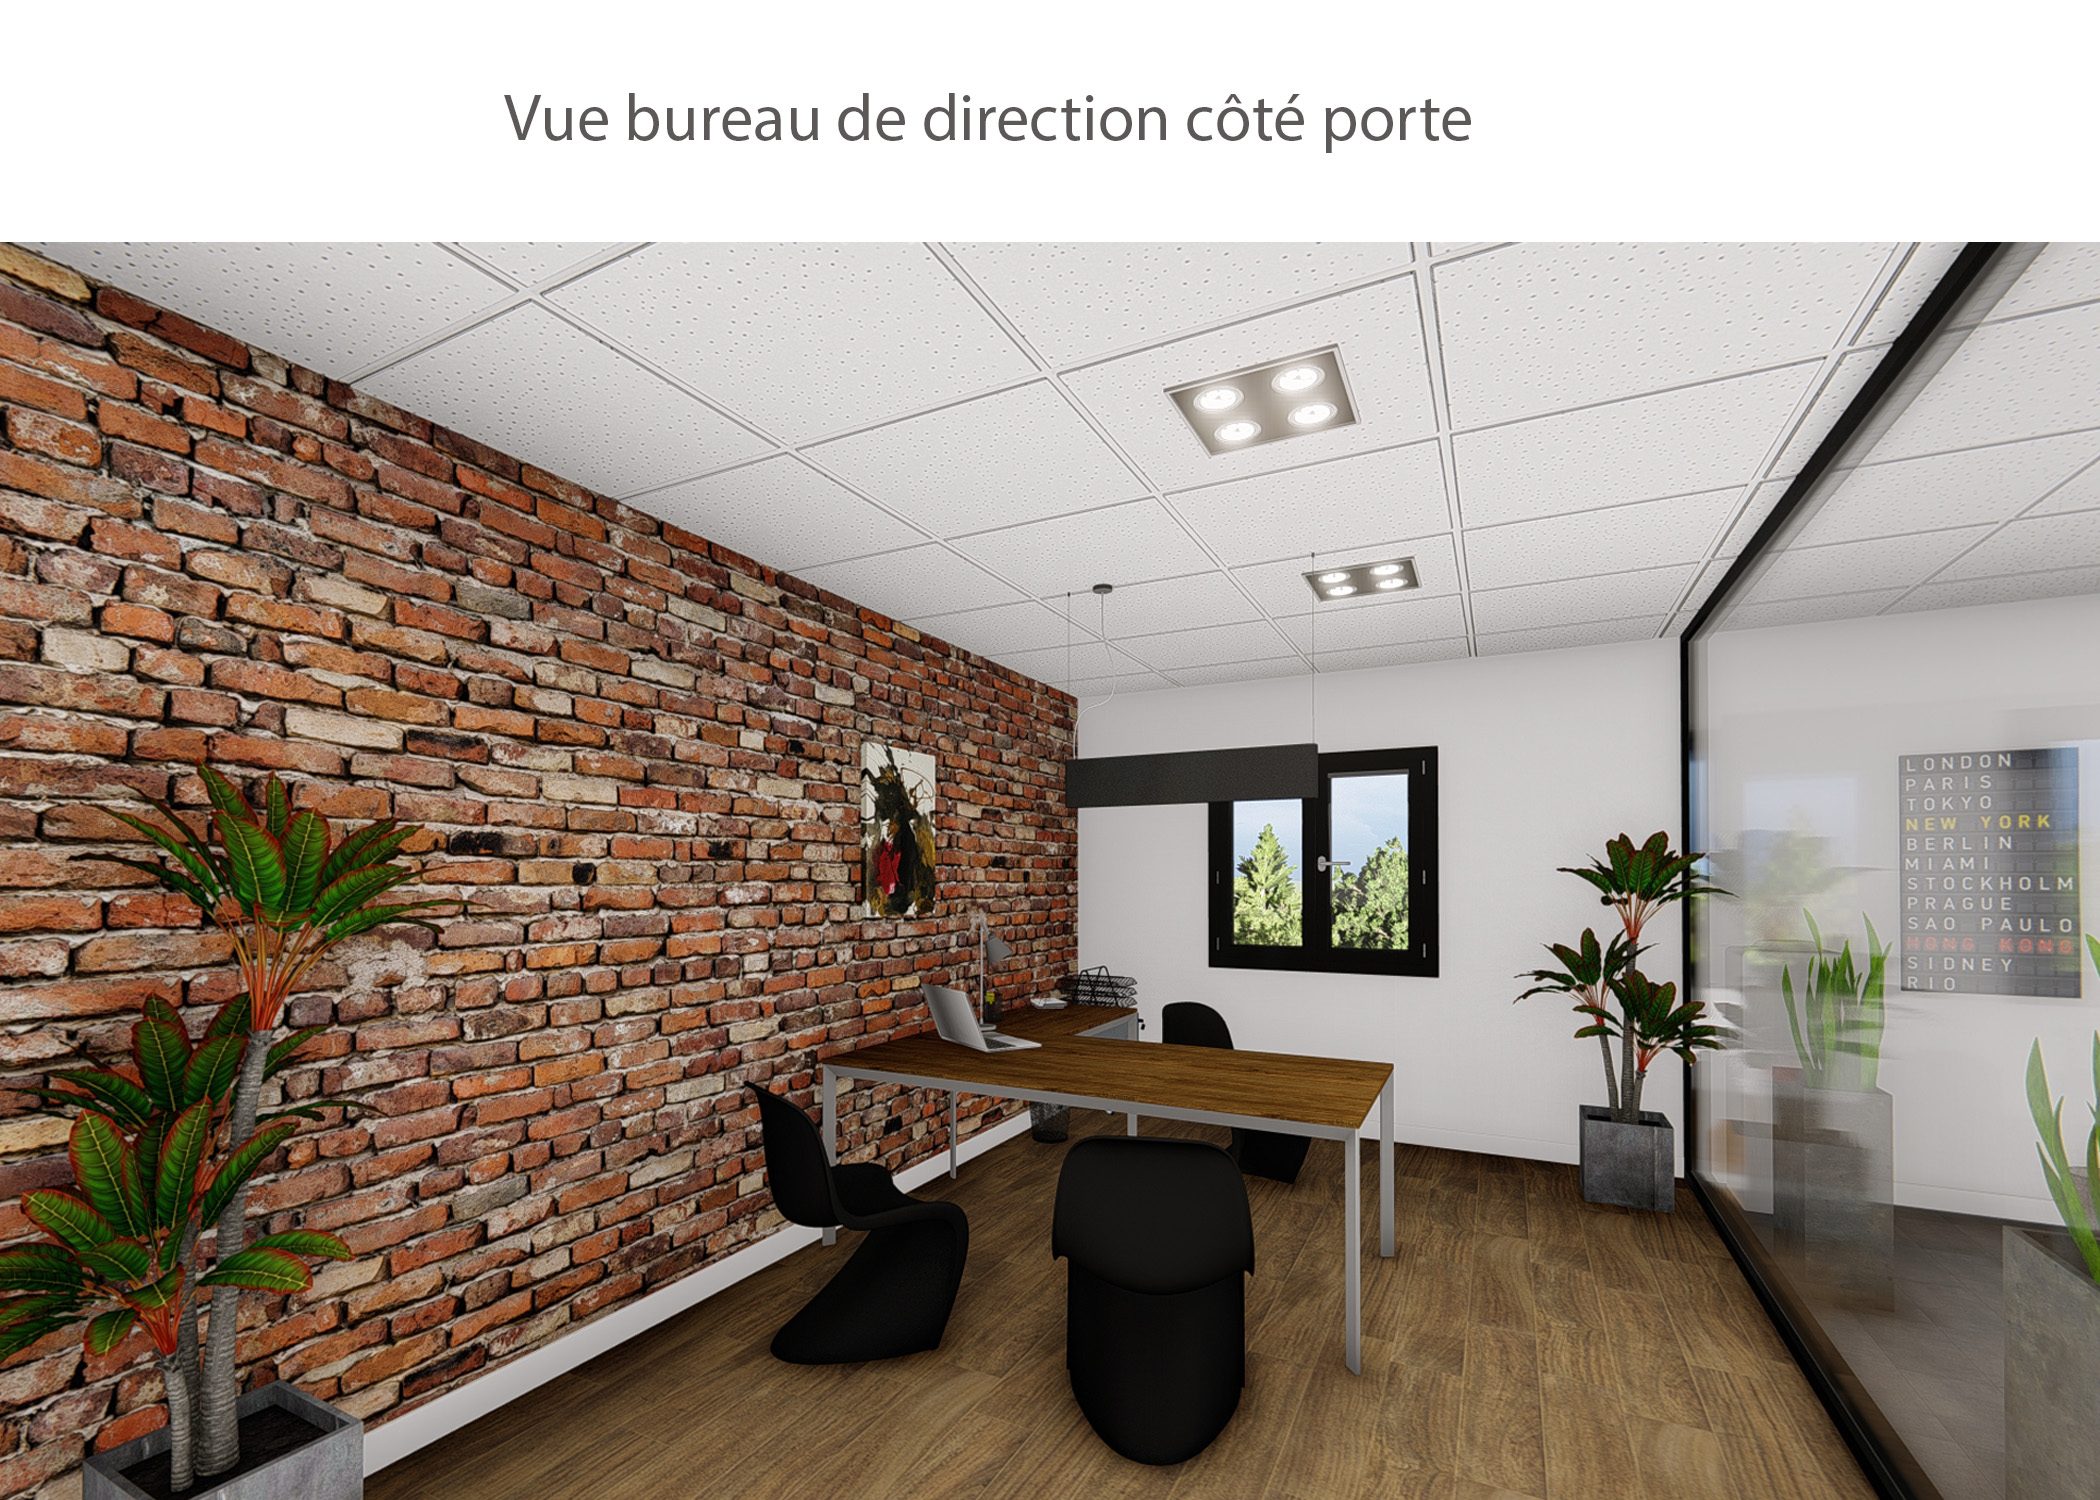 amenagement-decoration-start-up vente en ligne-region parisienne-bureau de direction cote porte-dekho design